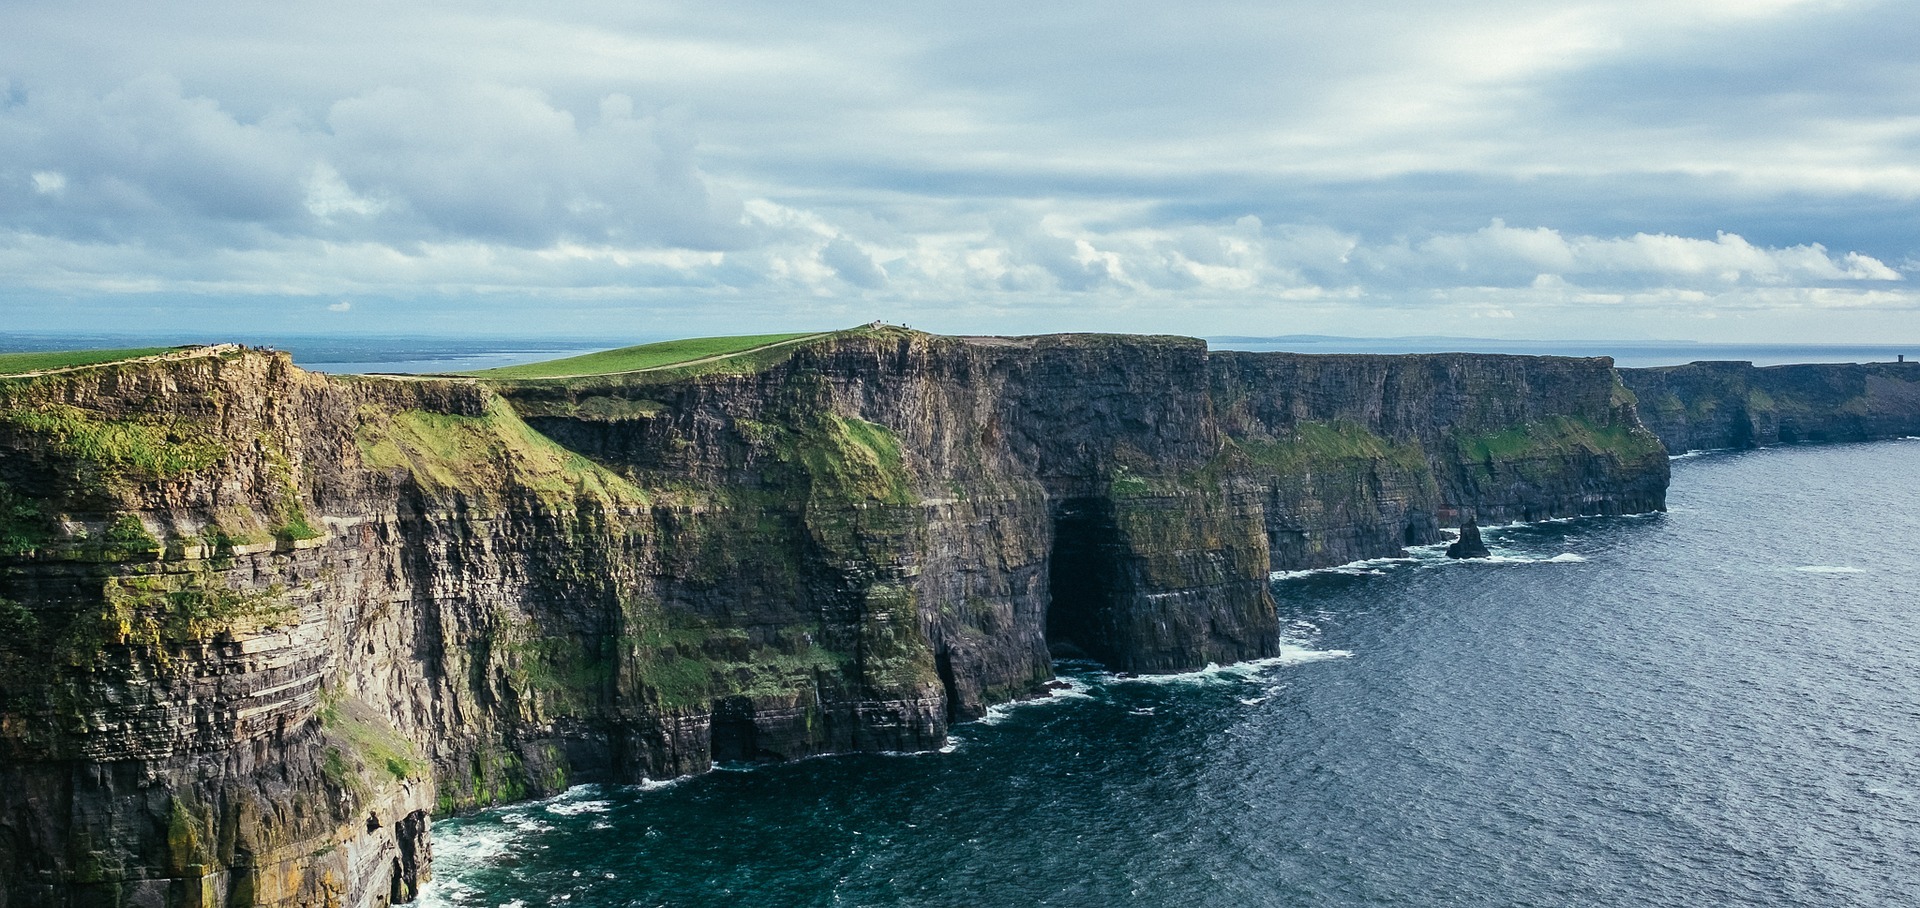 Studenci zagraniczni wybierający studia w Irlandii bardzo chętnie odwiedzają Cliffs of Moher